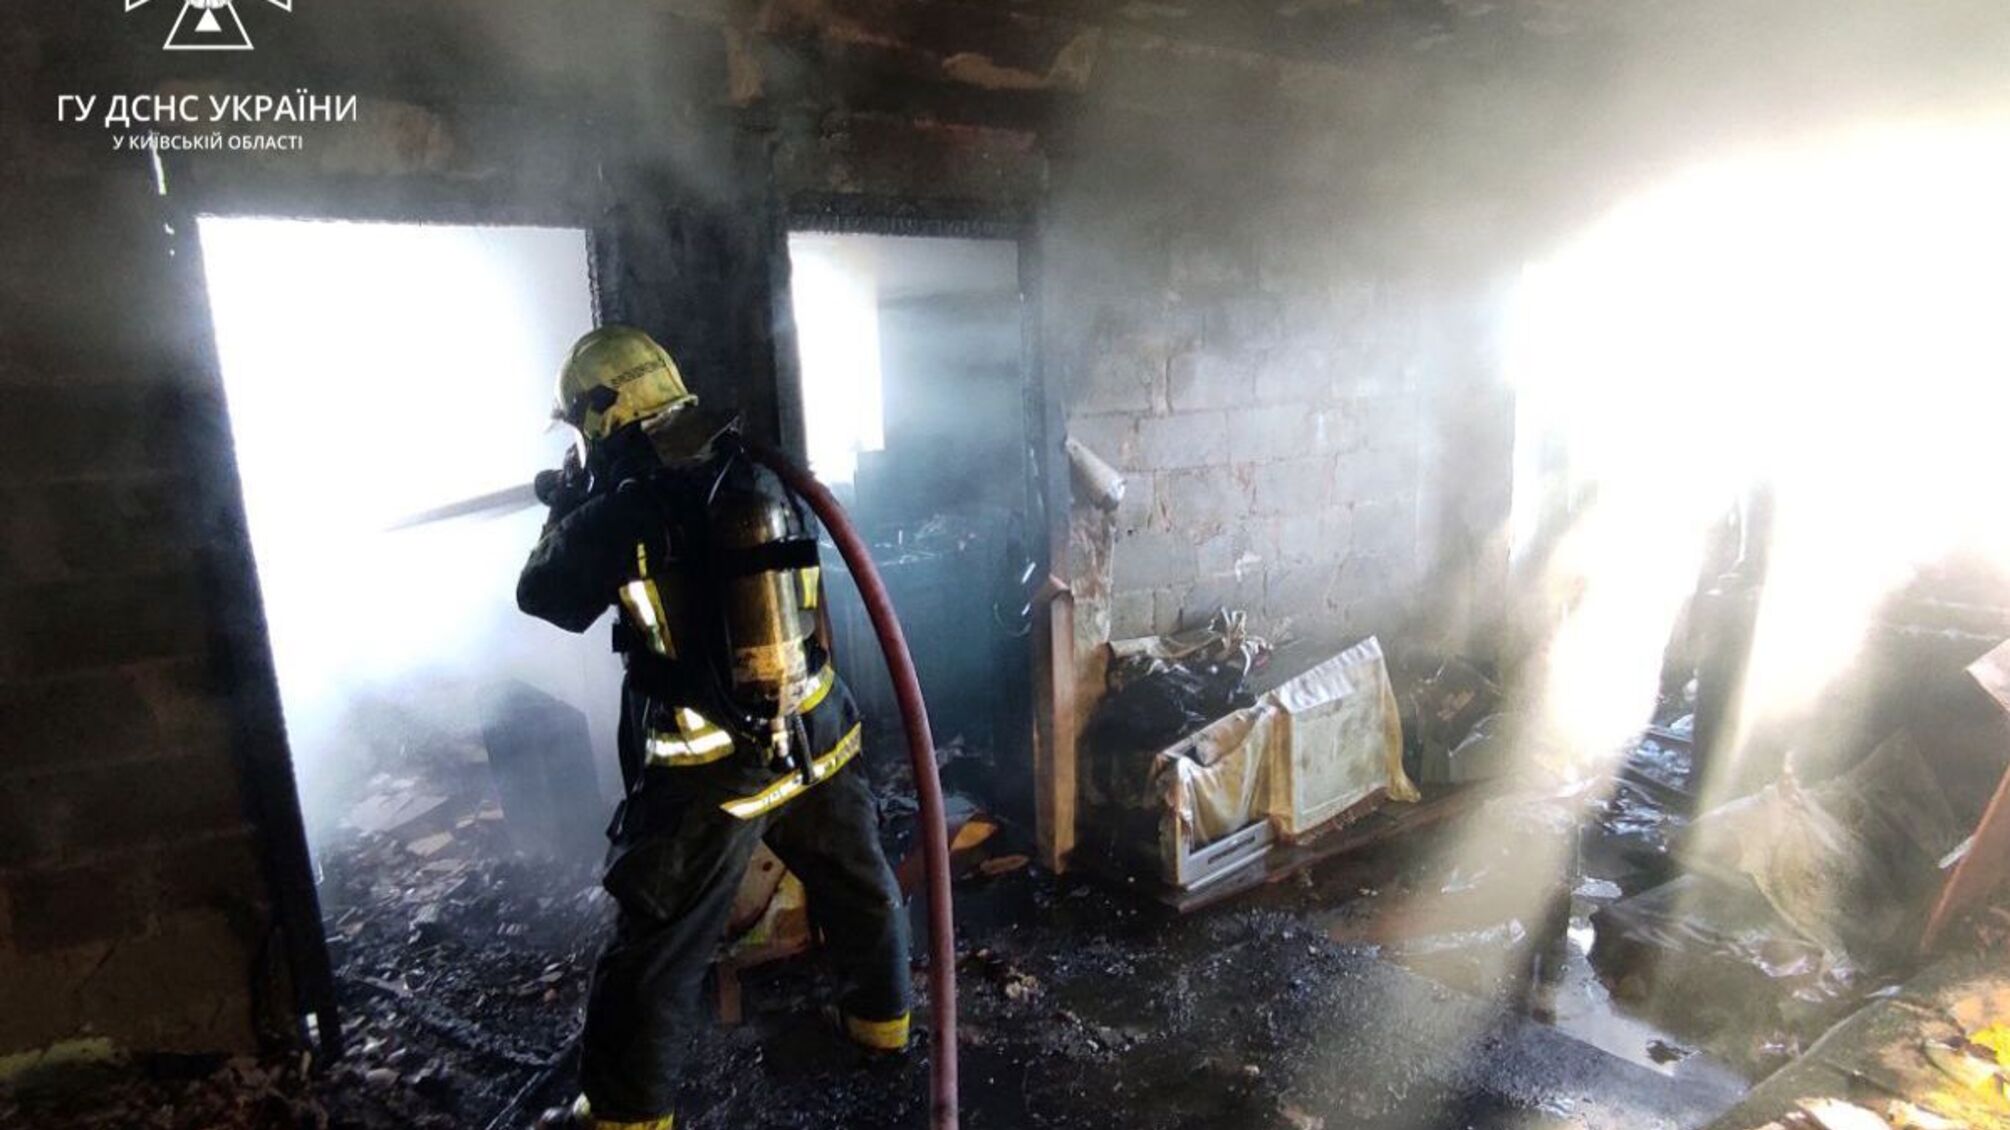 Під Києвом сталася пожежа: рятувальники встигли витягти з вогню чоловіка (фото)